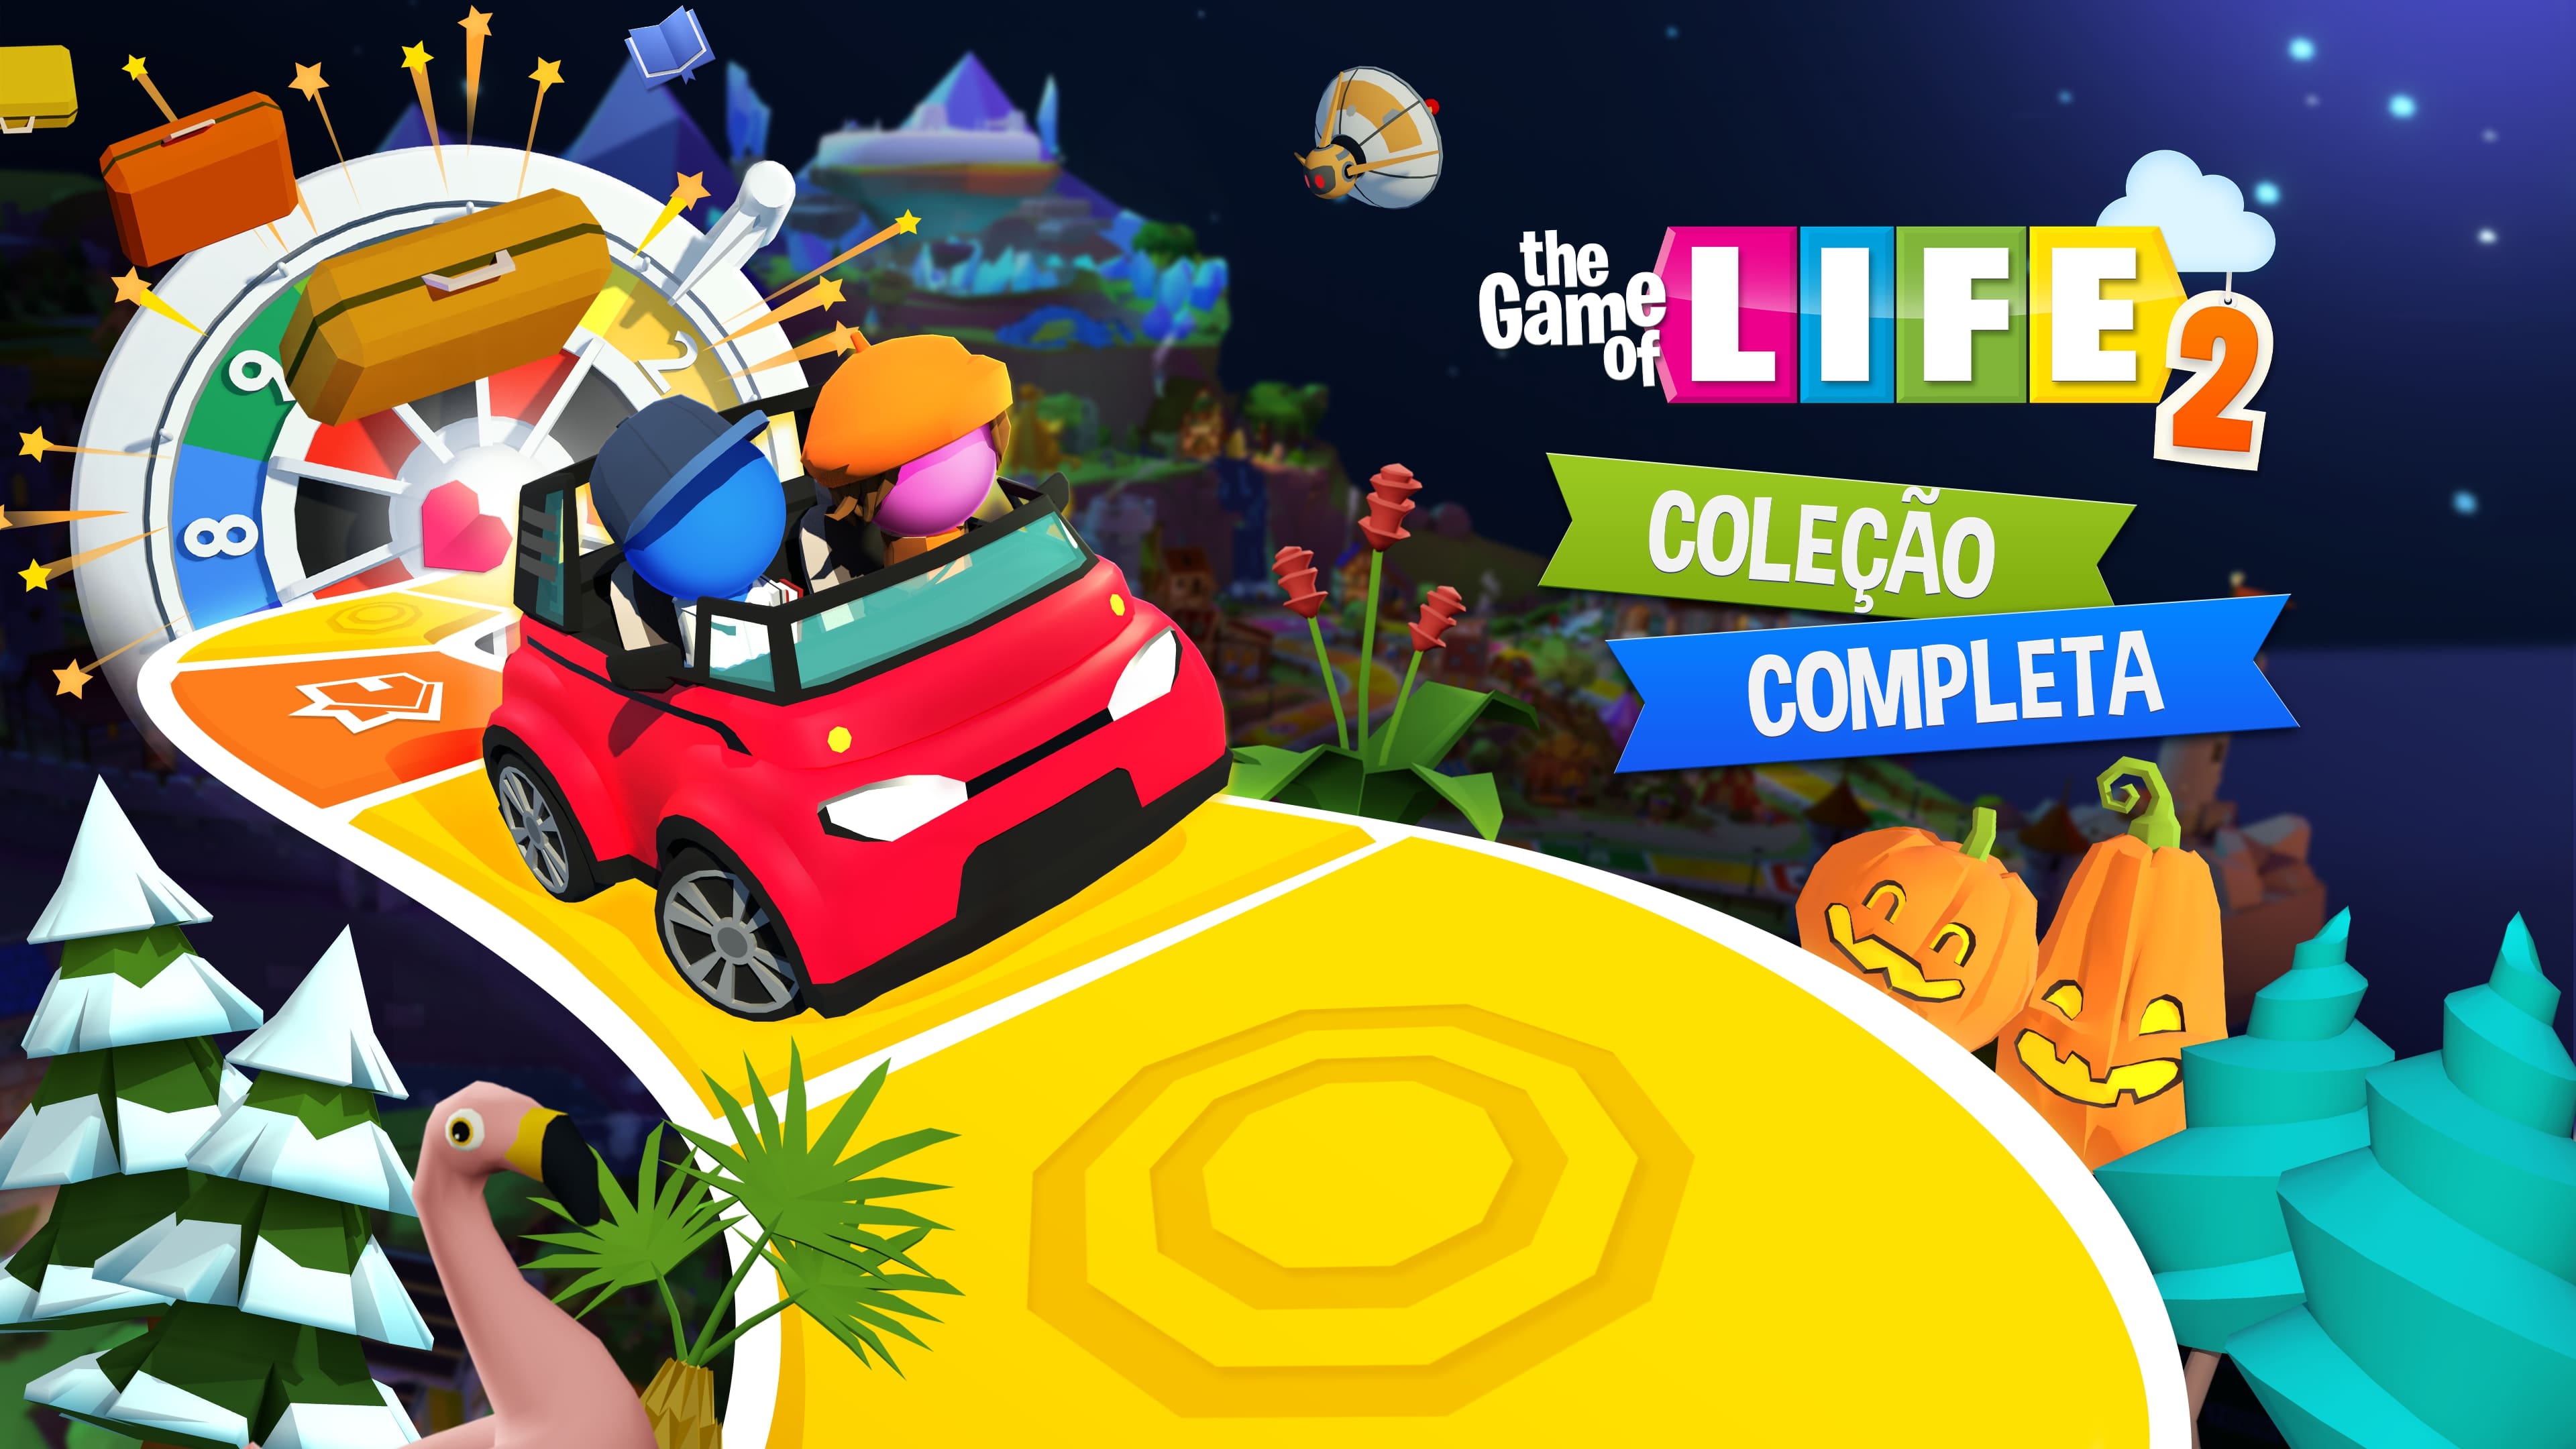 The Game of Life 2 -Coleção Completa